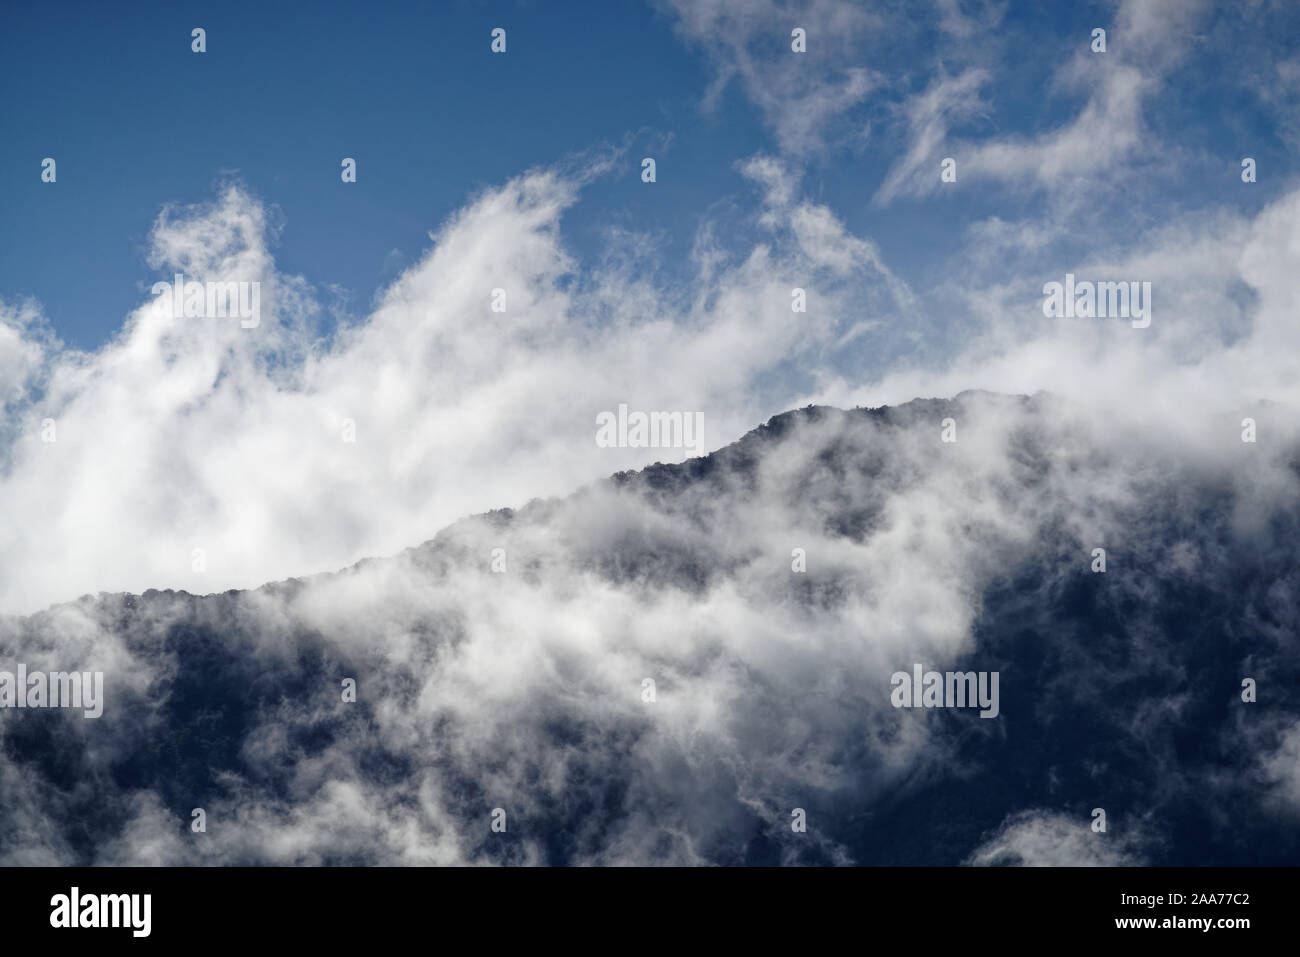 La vista da Nord a macchia nativa nelle nuvole da Havelock attraverso Pelorus Suono e Kaikemera Bay, Marlborough Sounds, Nuova Zelanda. Foto Stock